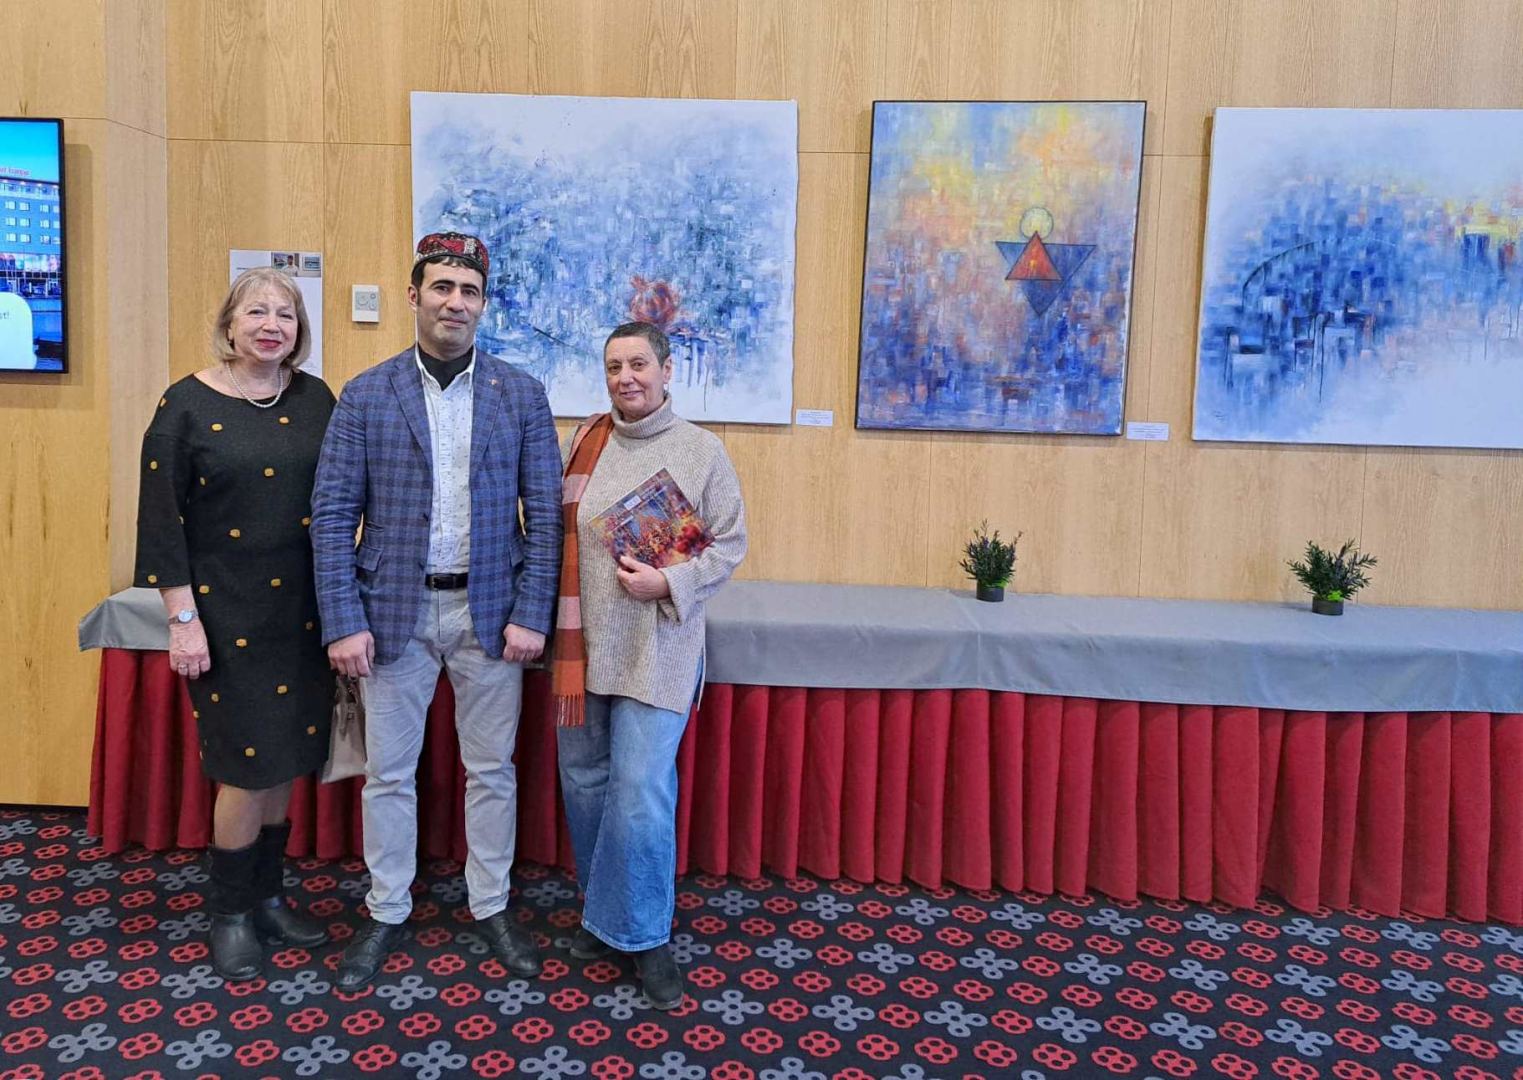 В Таллине открылась выставка работ азербайджанского художника "Восток и Запад" (ВИДЕО, ФОТО)